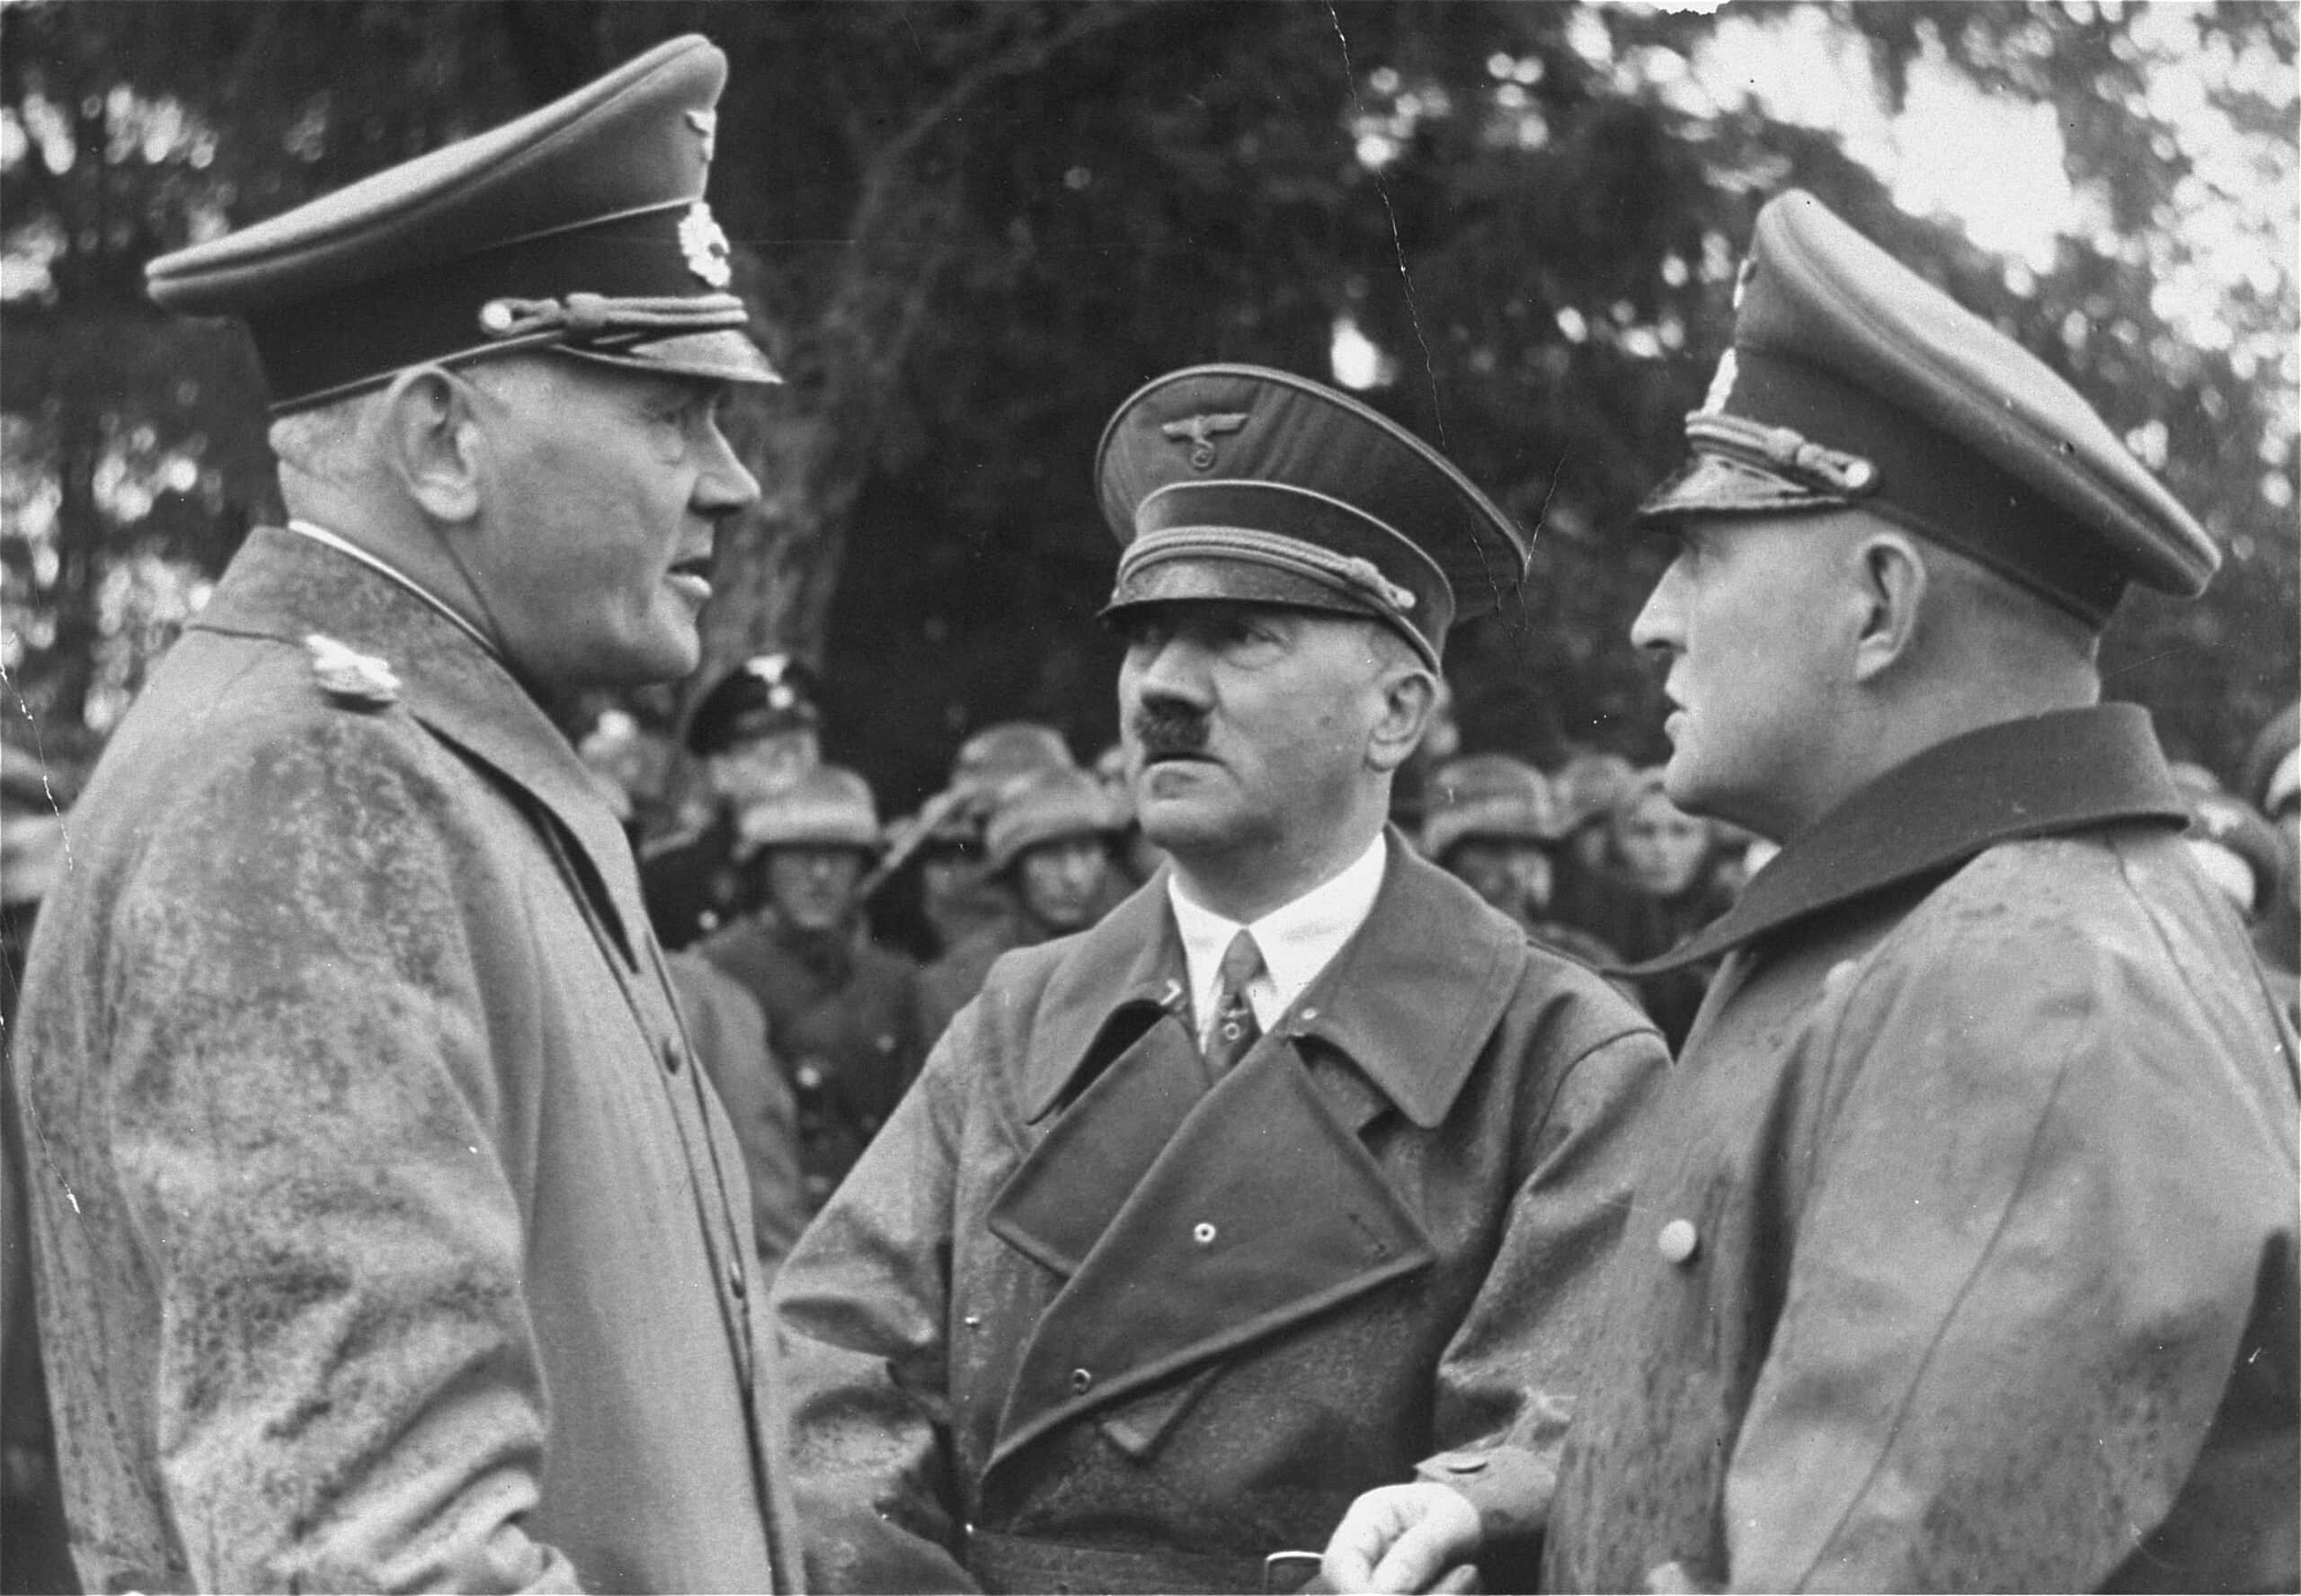 Canal HISTORIA explora la ascensión y la influencia del líder nazi en ‘El poder de Hitler’